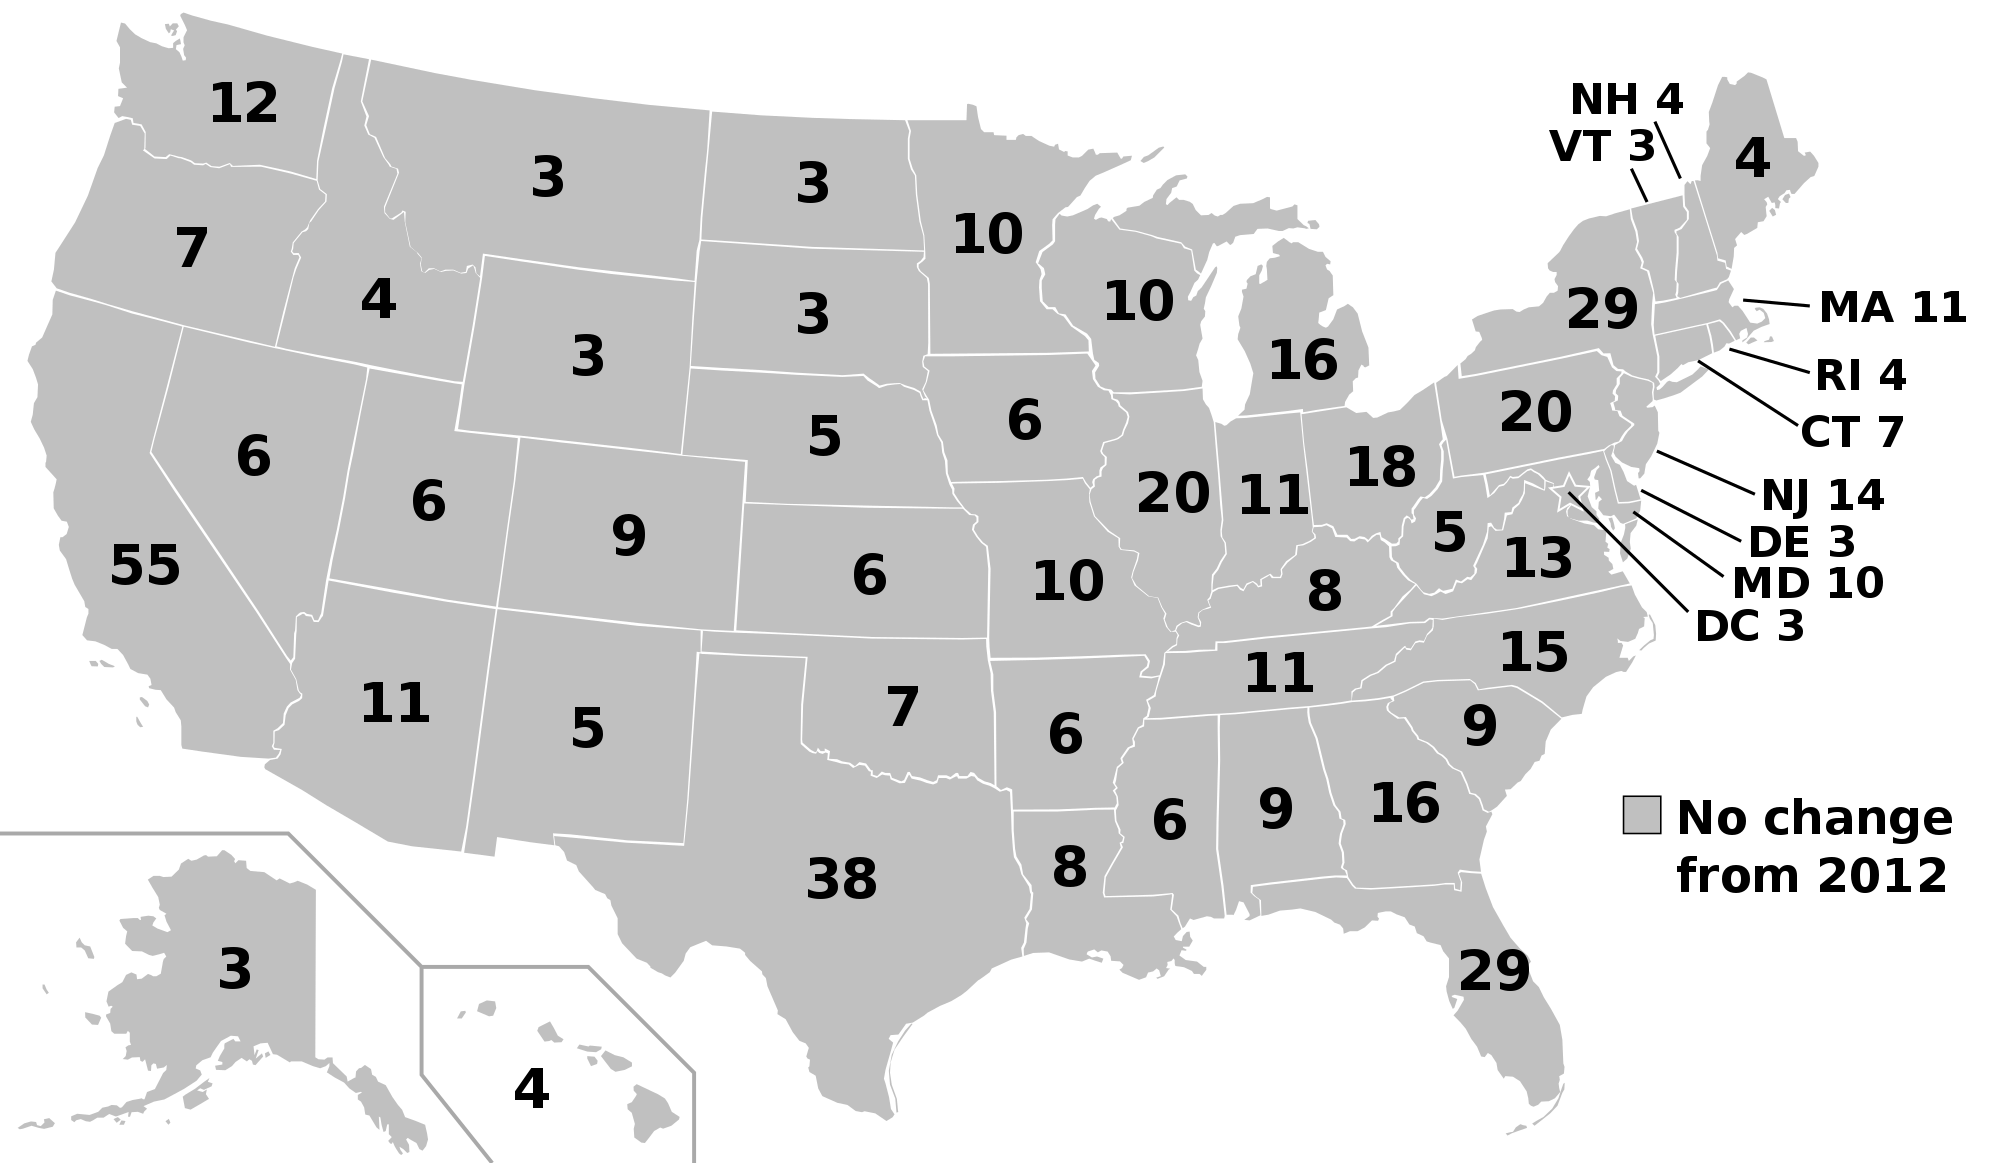 Ο εκλεκτορικός χάρτης των ΗΠΑ. Ξεχωρίζουν η Καλιφόρνια, το Τέξας, η Νέα Υόρκη και η Φλόριντα.